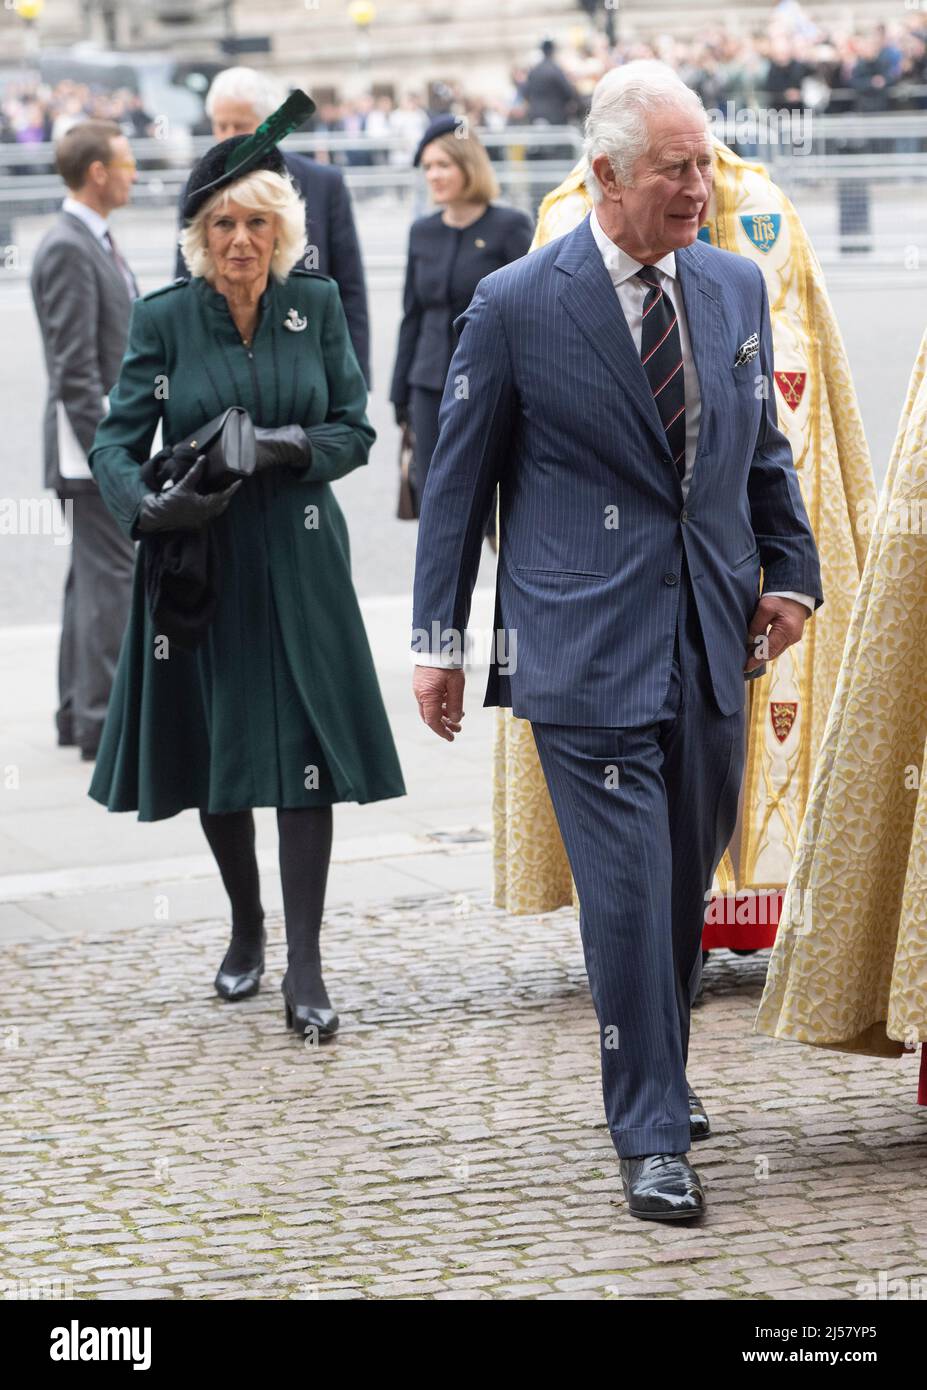 Londres, Royaume-Uni. 29 mars 2022. Le prince Charles, prince de Galles et Camilla, duchesse de Cornwall, assistent à un service commémoratif pour le prince Philip, duc d'EDI Banque D'Images